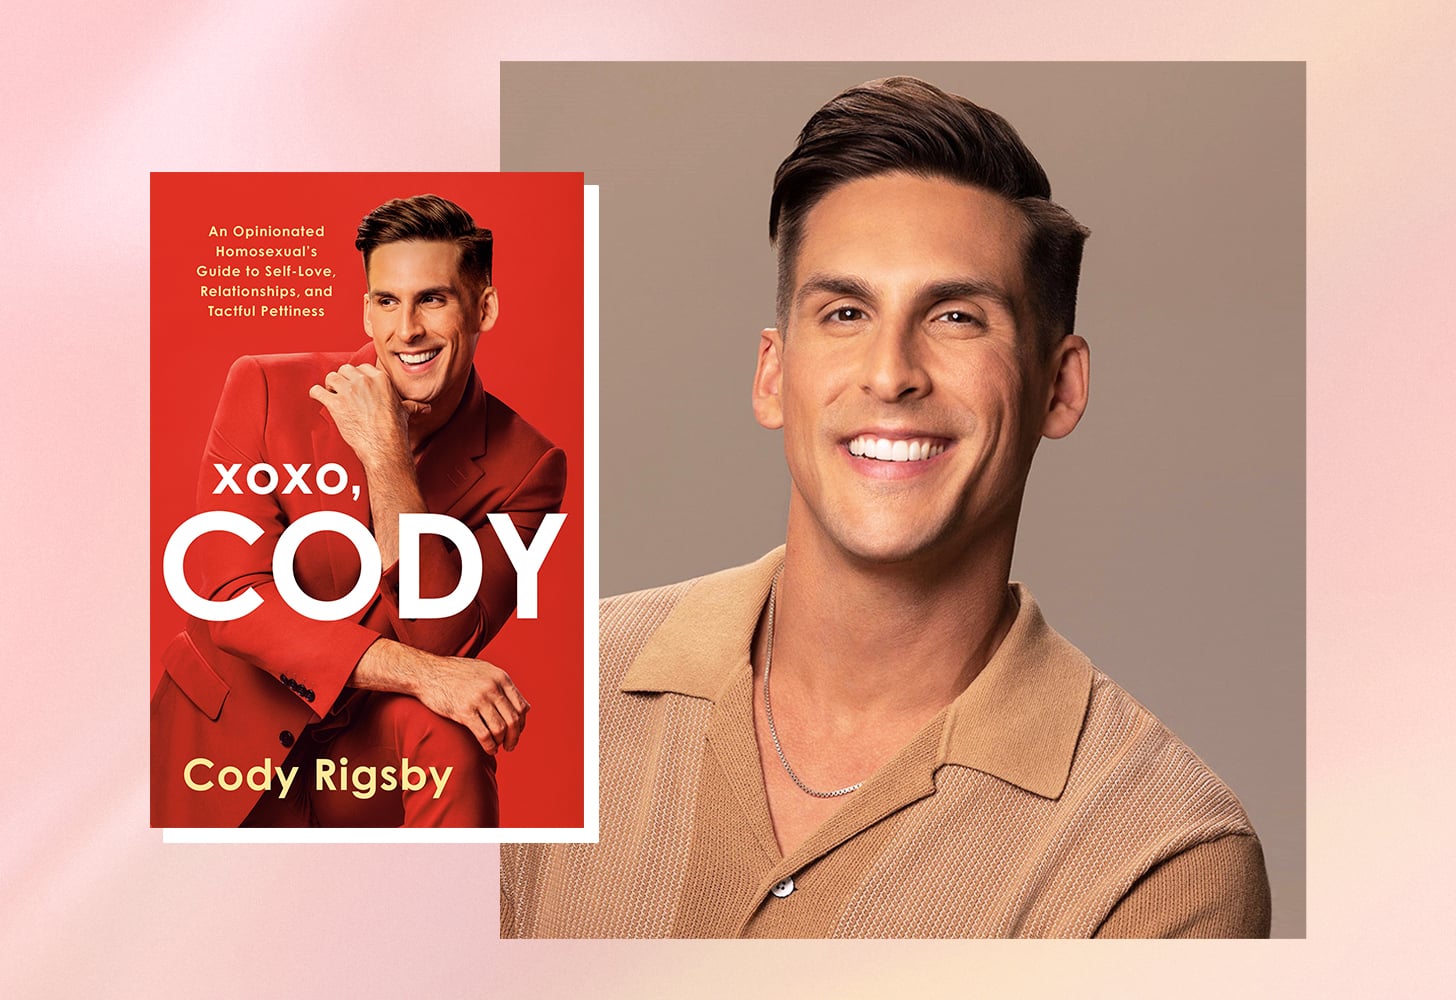 Xoxo, Cody excerpt by Cody Rigsby